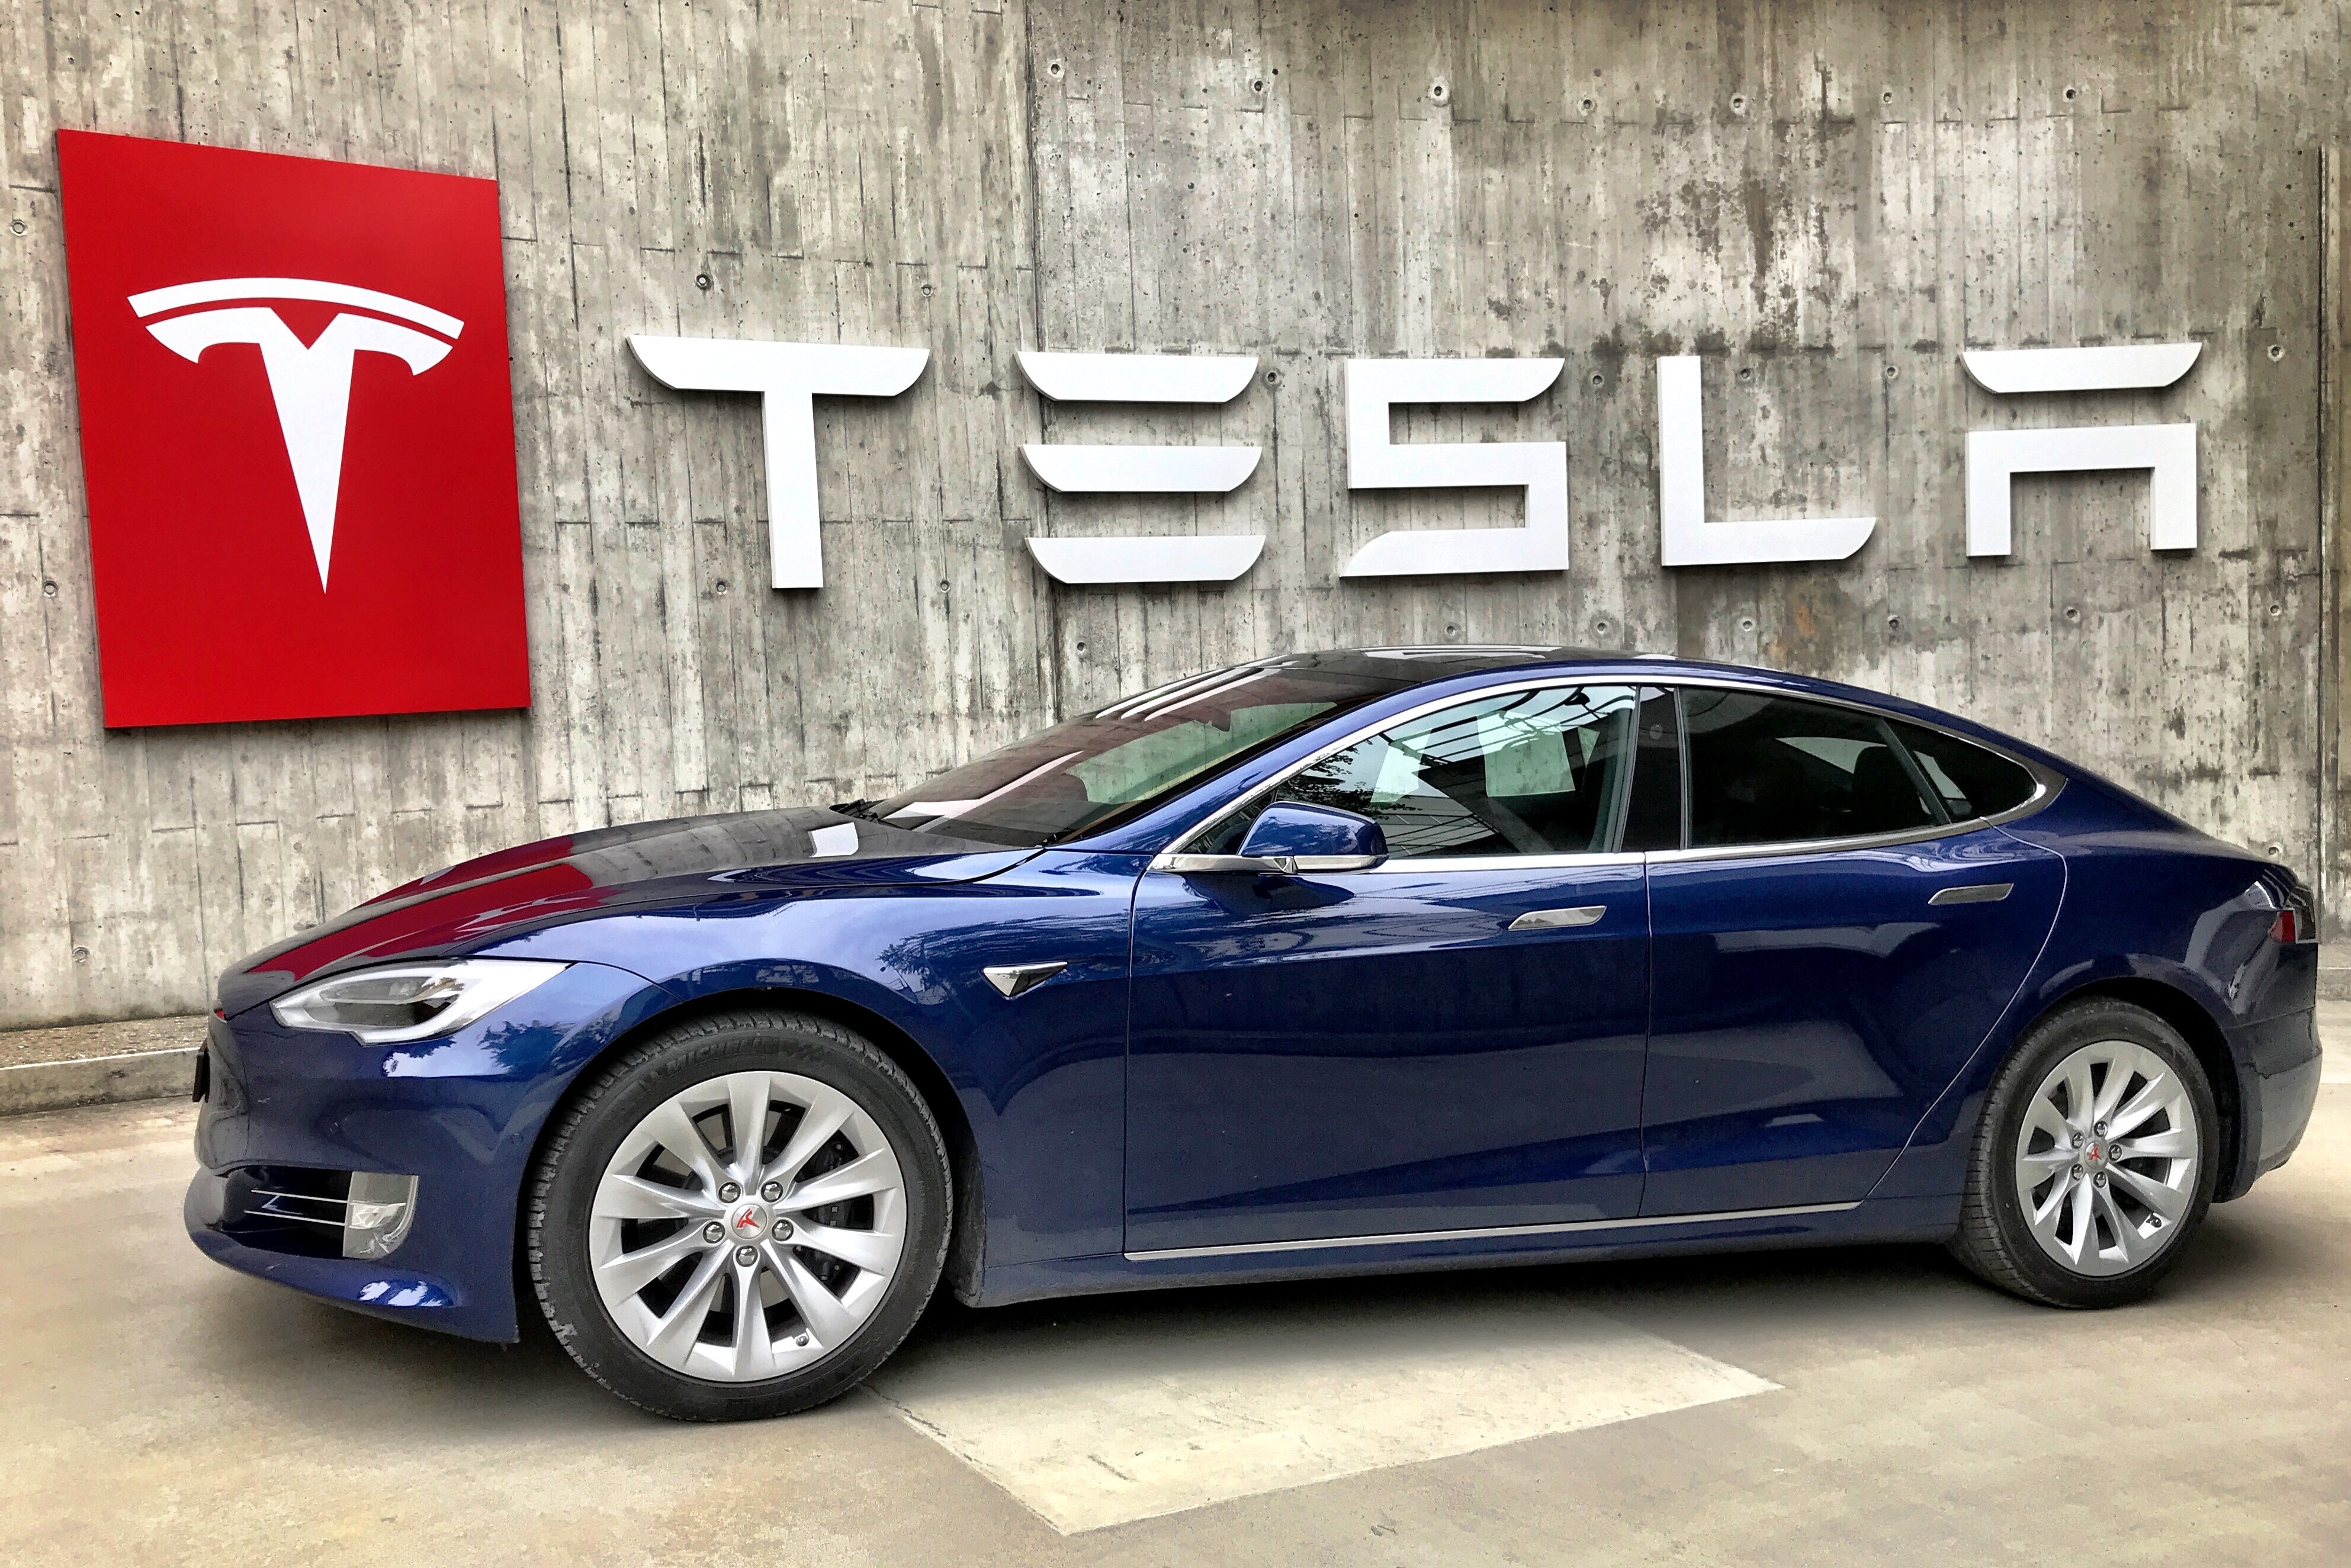 Wonderinterest | Tesla's autopilot software change faces NHTSA inspection